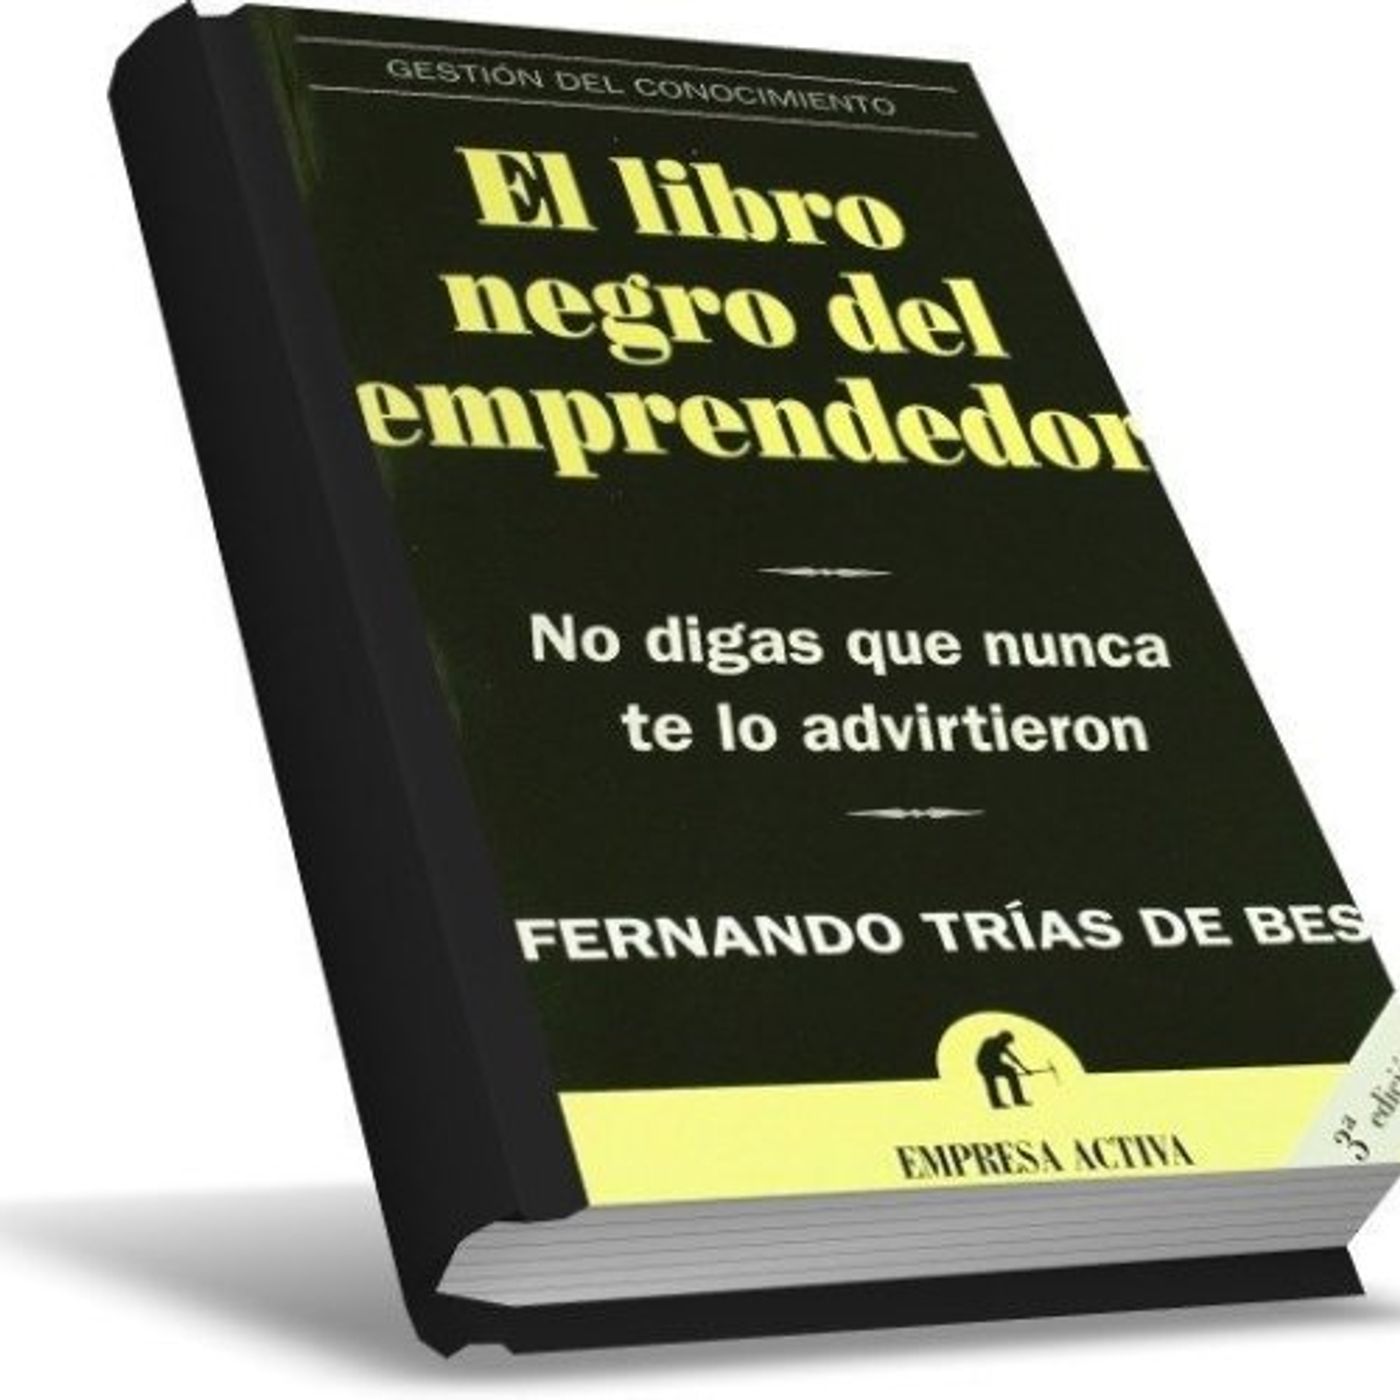 El libro negro del emprendedor